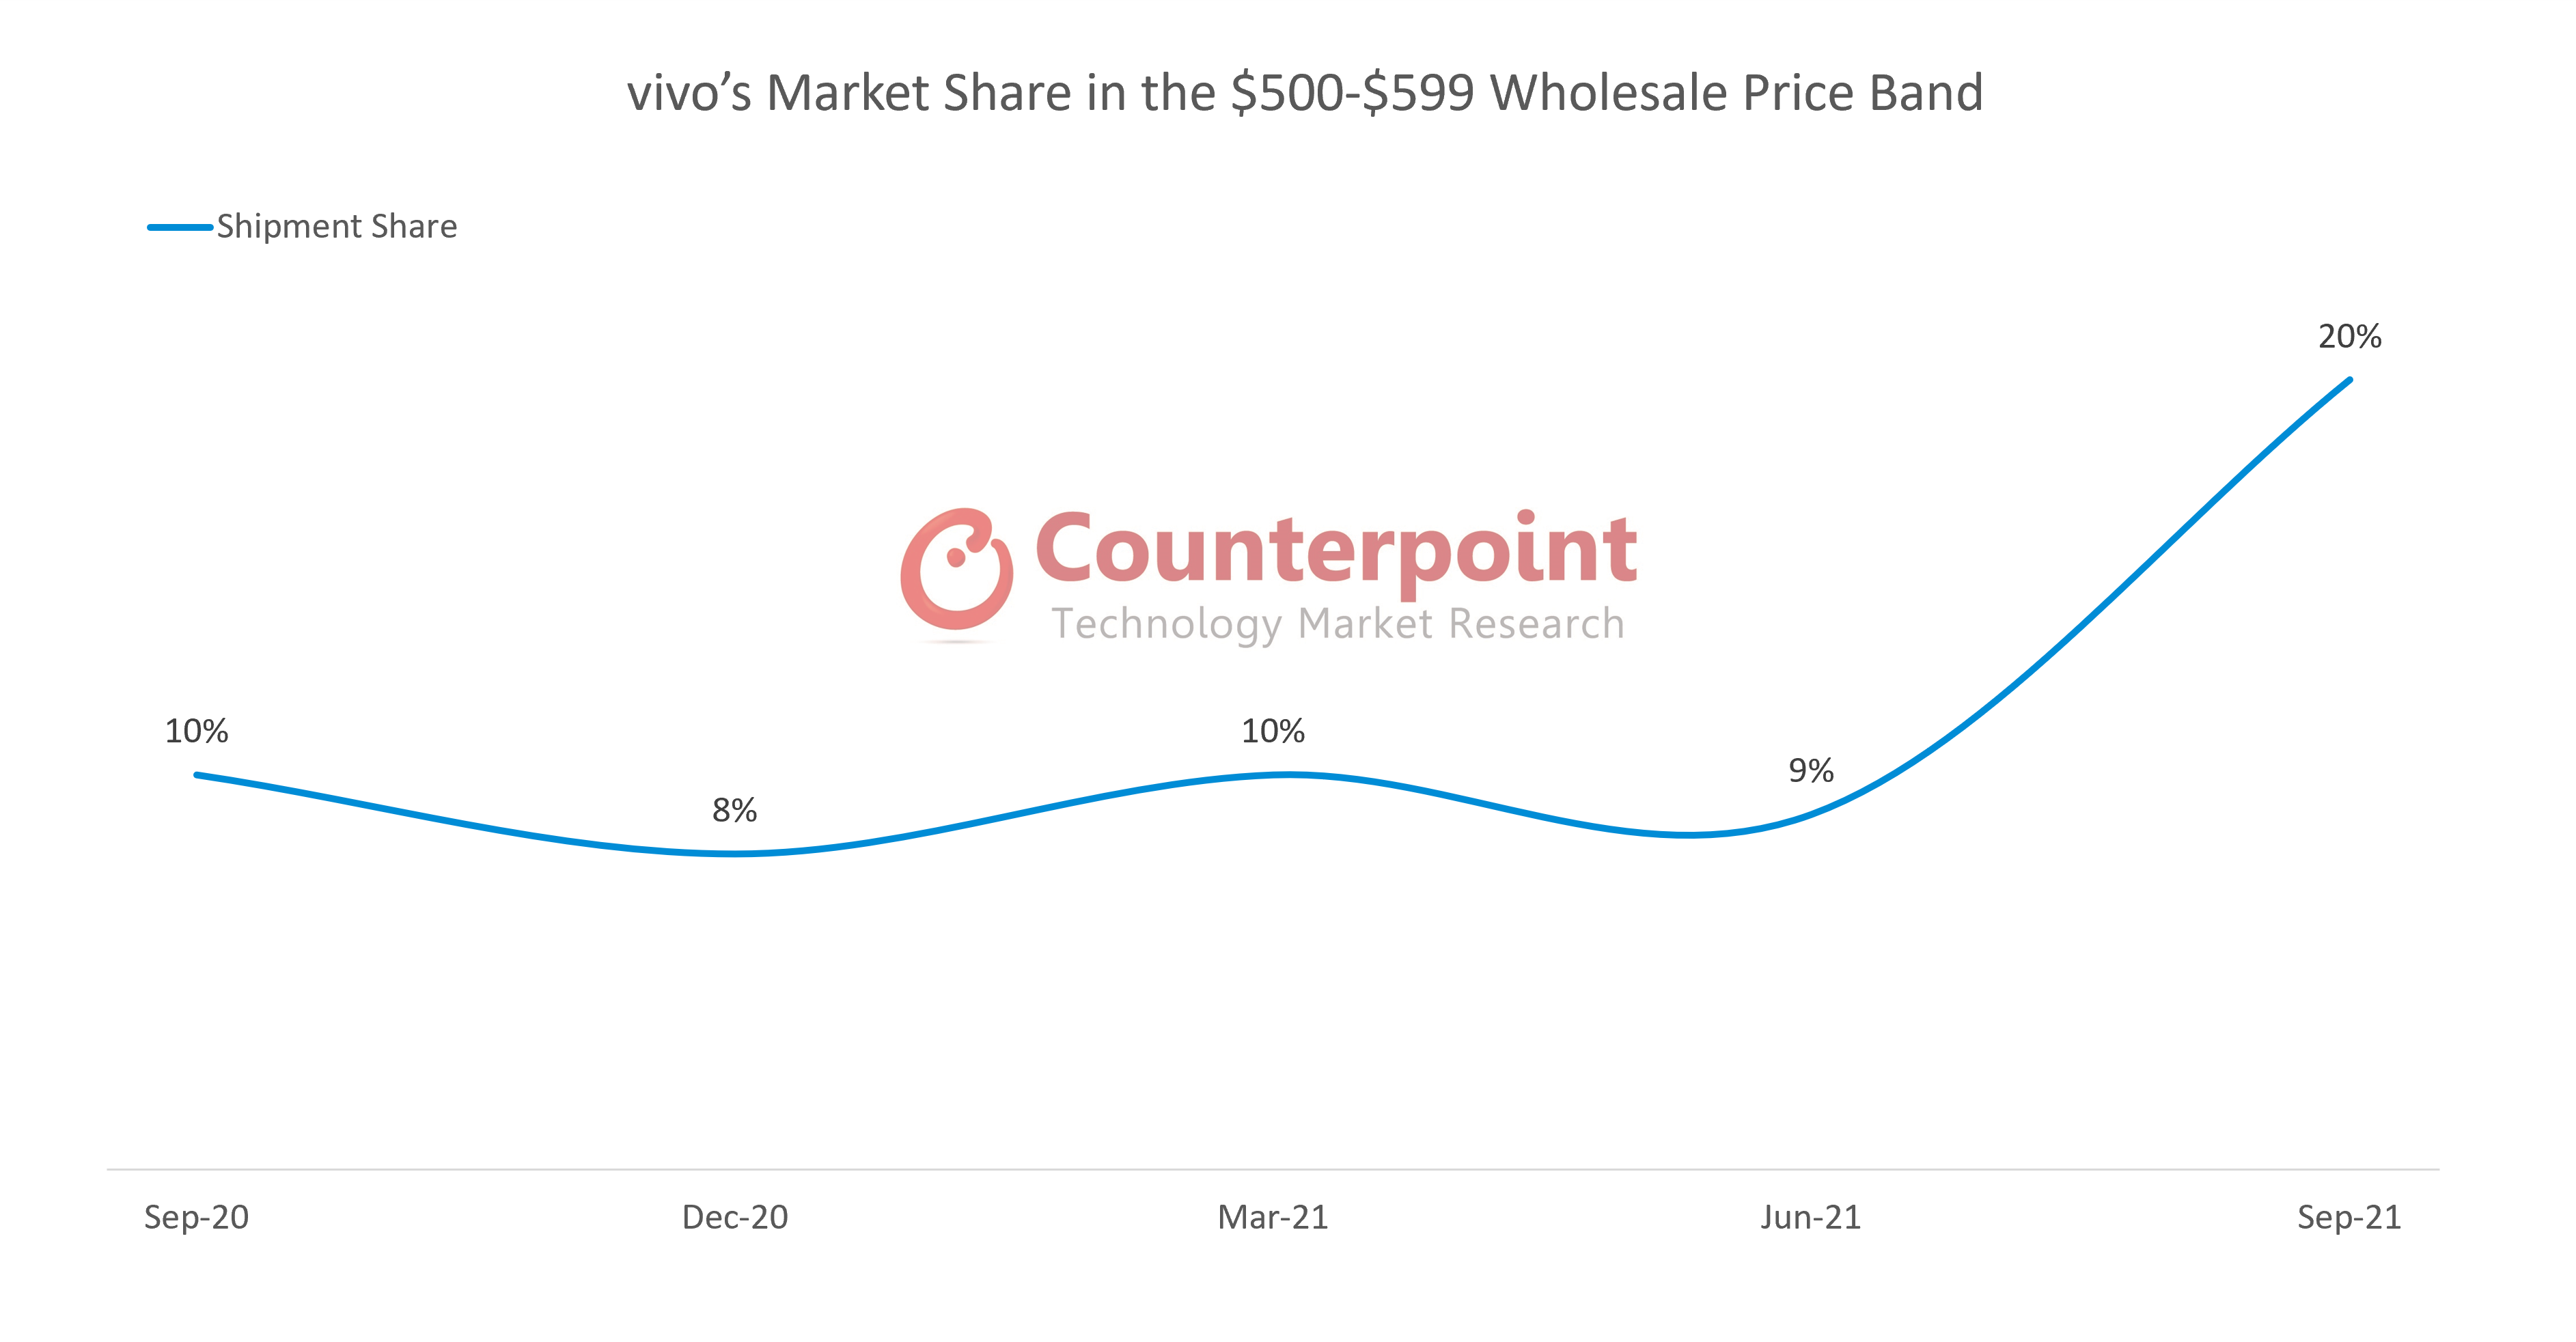 vivo的市场份额在500- 599美元的价格区间